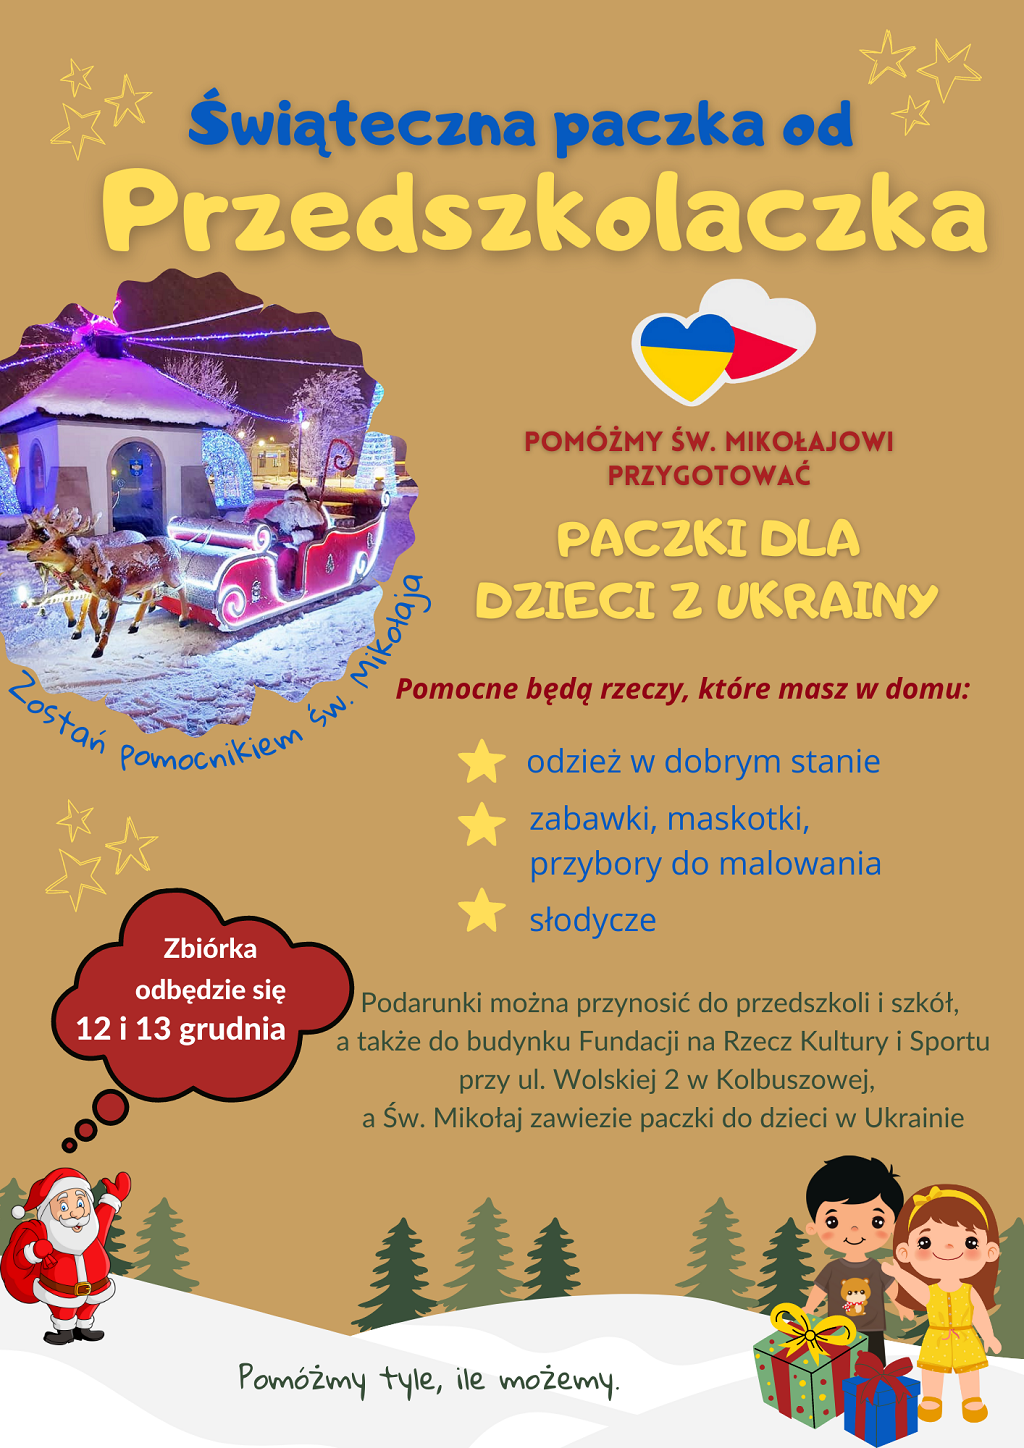 Świąteczne paczki dla dzieci z Ukrainy